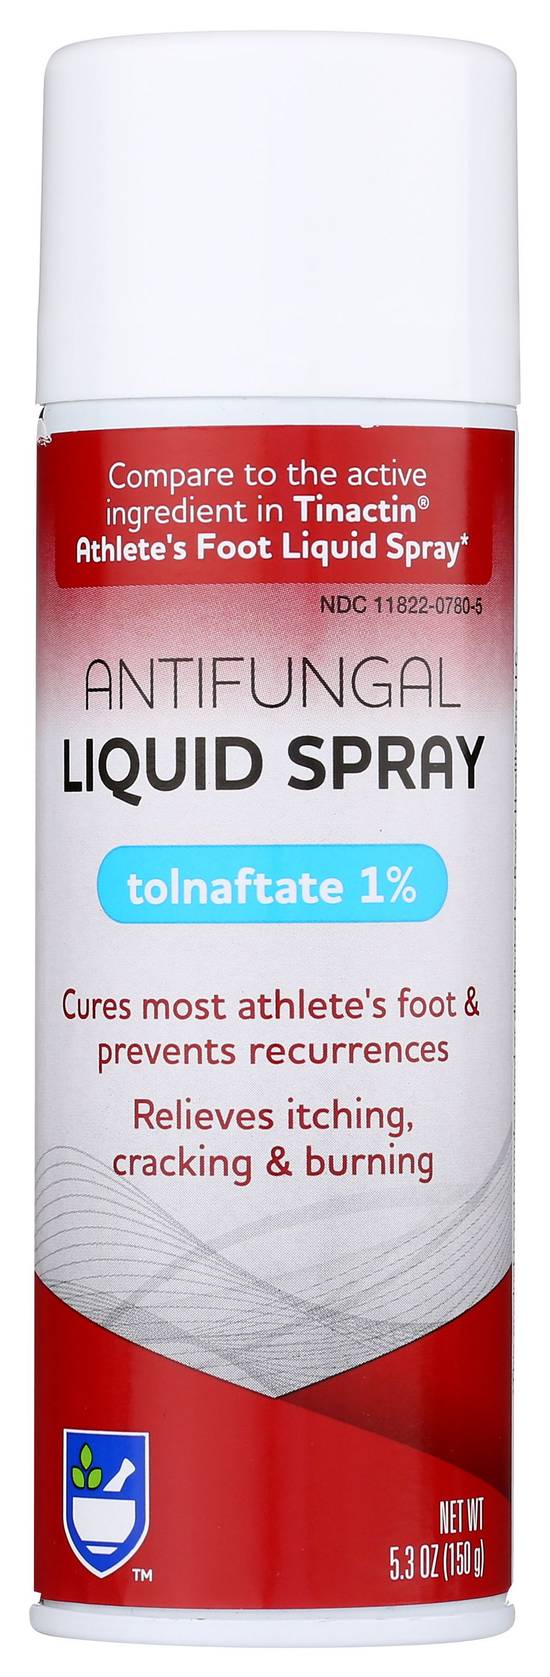 Rite Aid Antifungal Liquid Tolnaftate 1% Spray (5.3 oz)